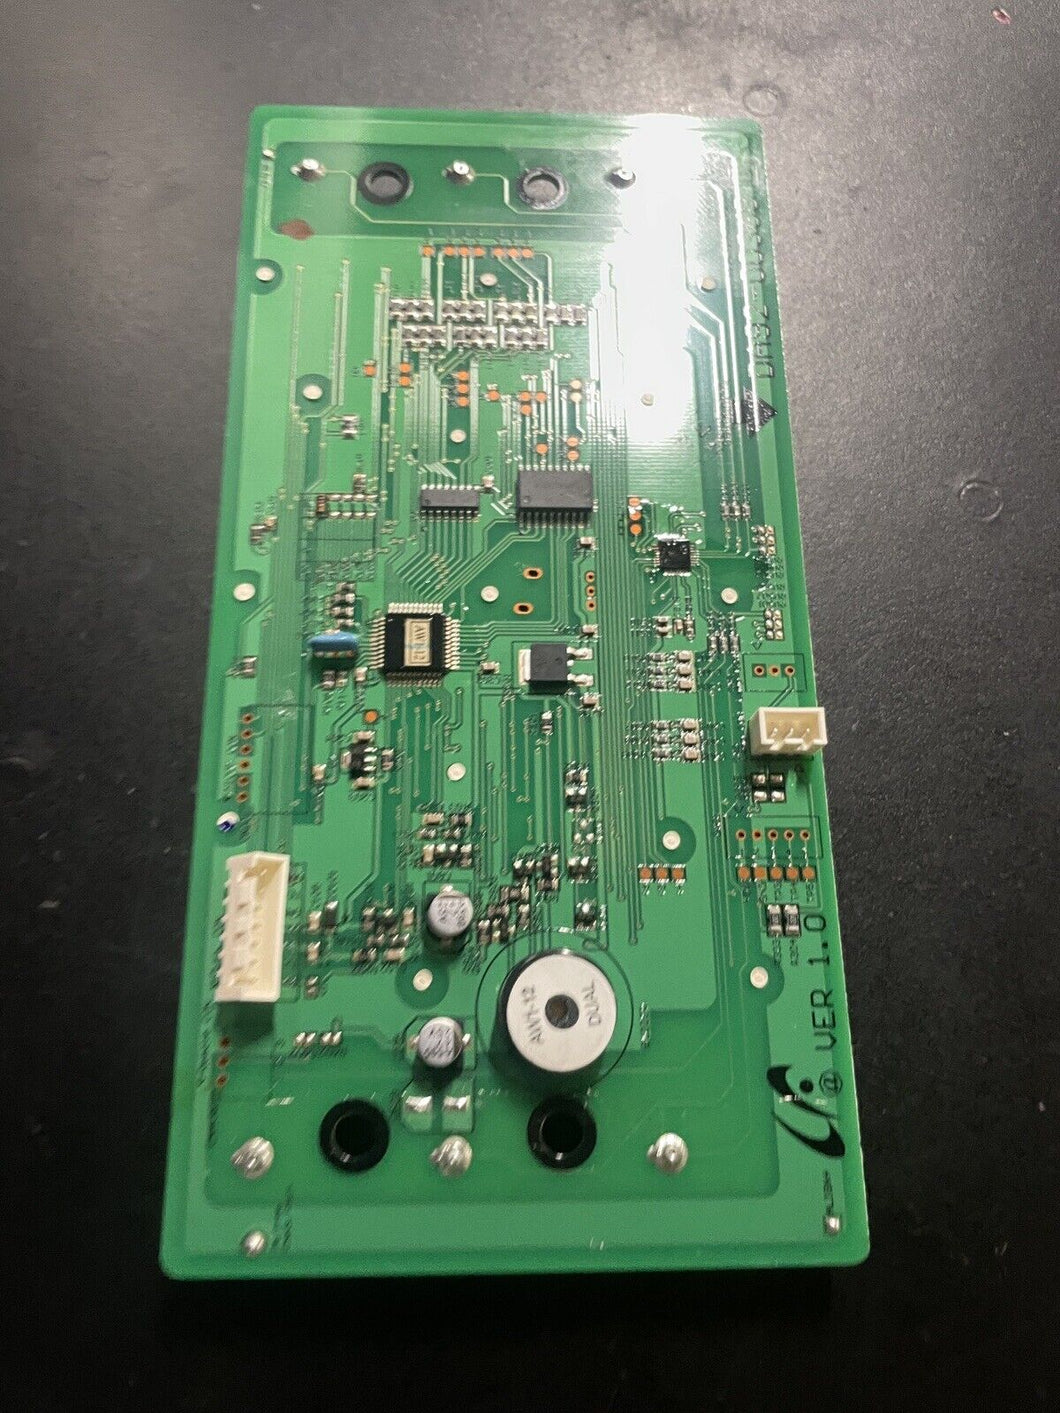 Samsung Refrigerator Control Board - Part # DA92-00368B |WM1518